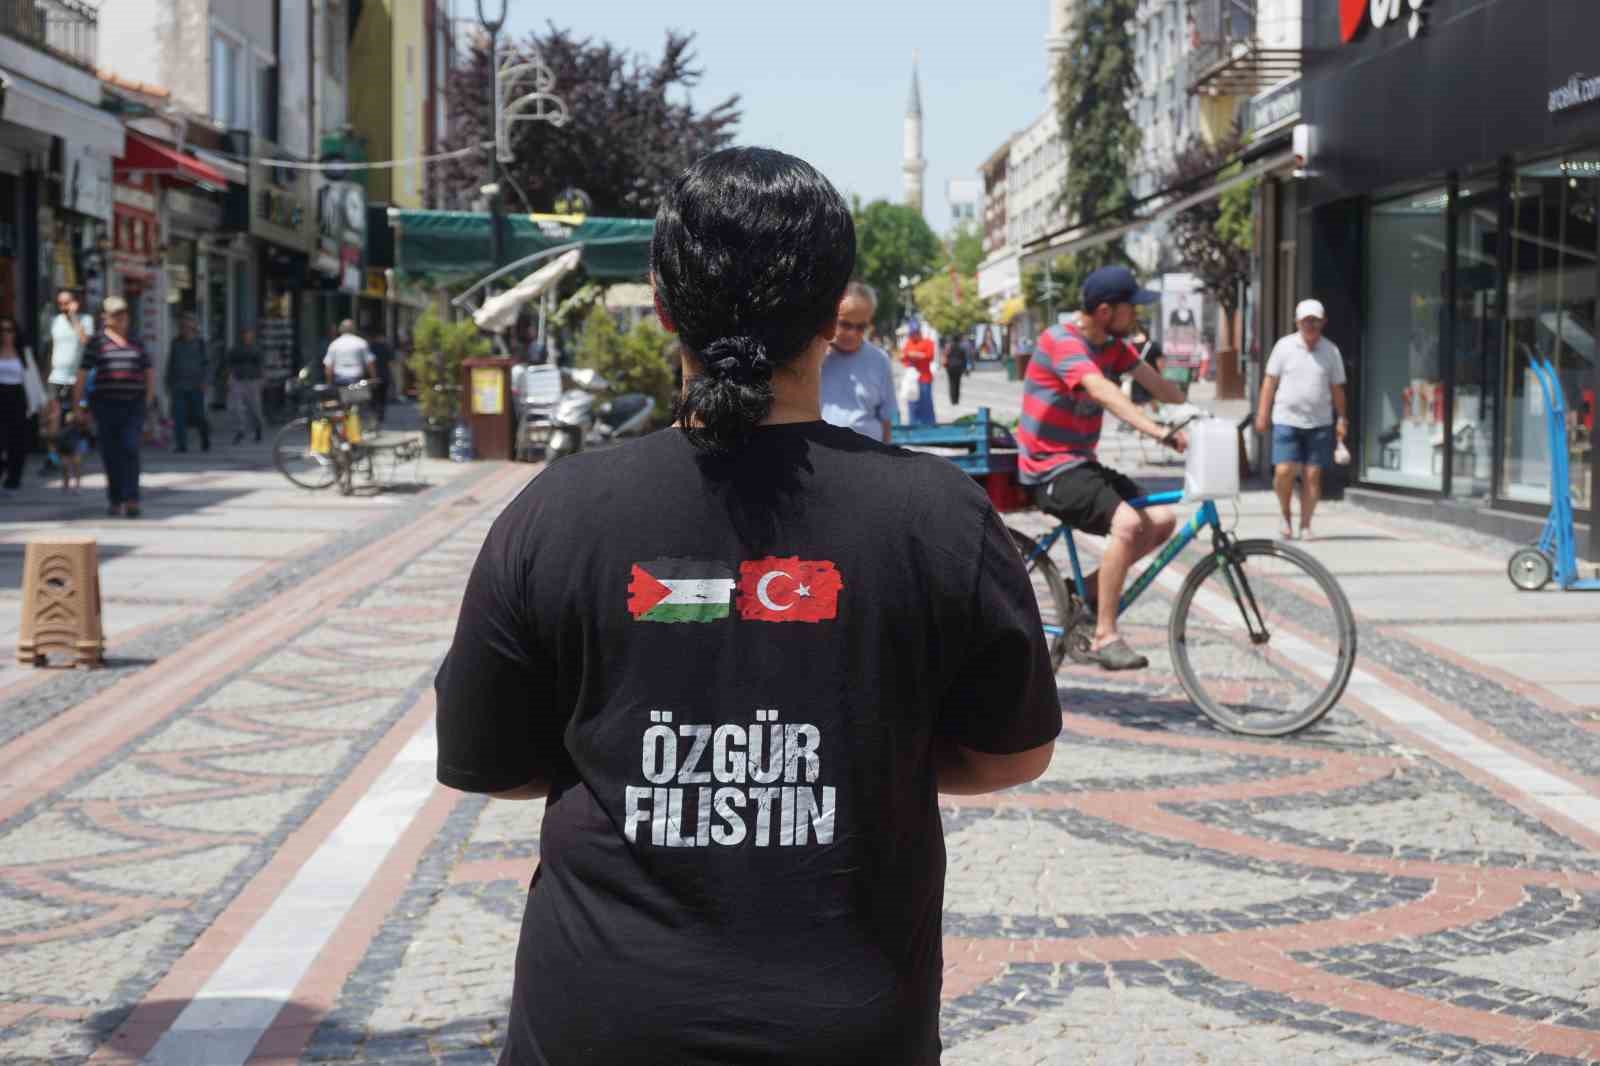 İsrailin Filistine Yönelik Saldırılarını Giydiği Tişört İle Protesto Etti